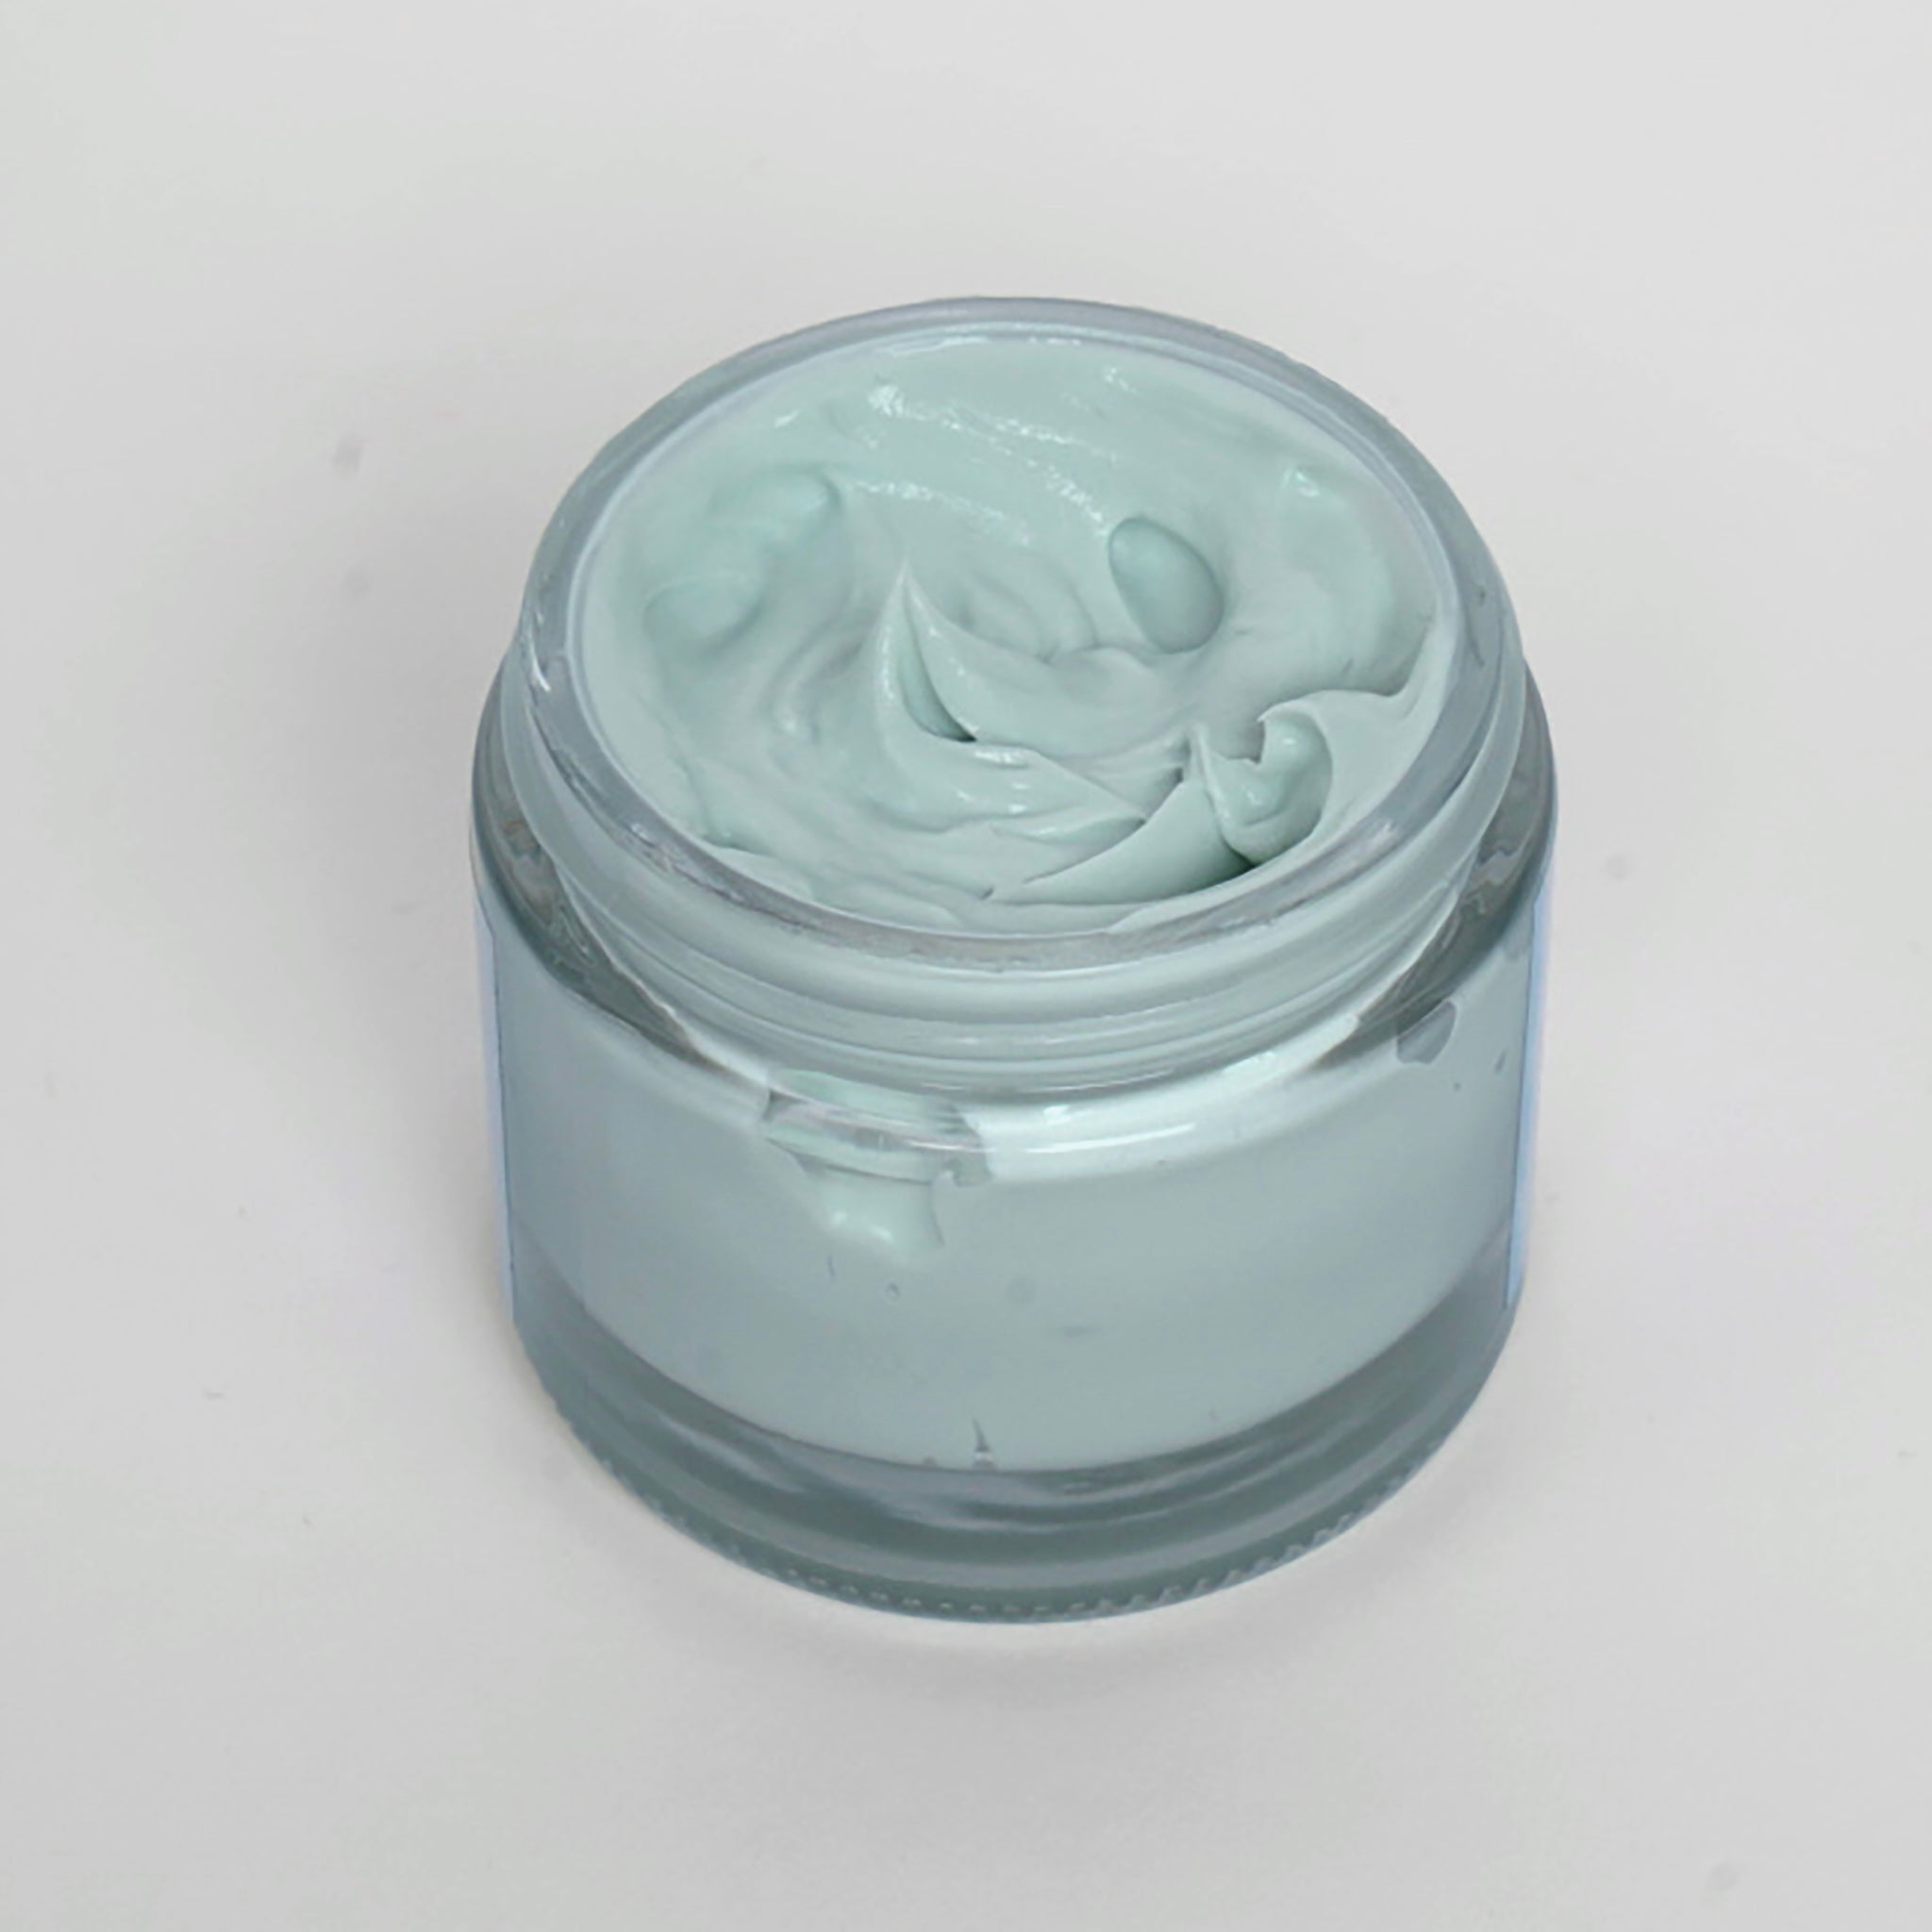 Blue Tansy Facial Cream - 2 oz